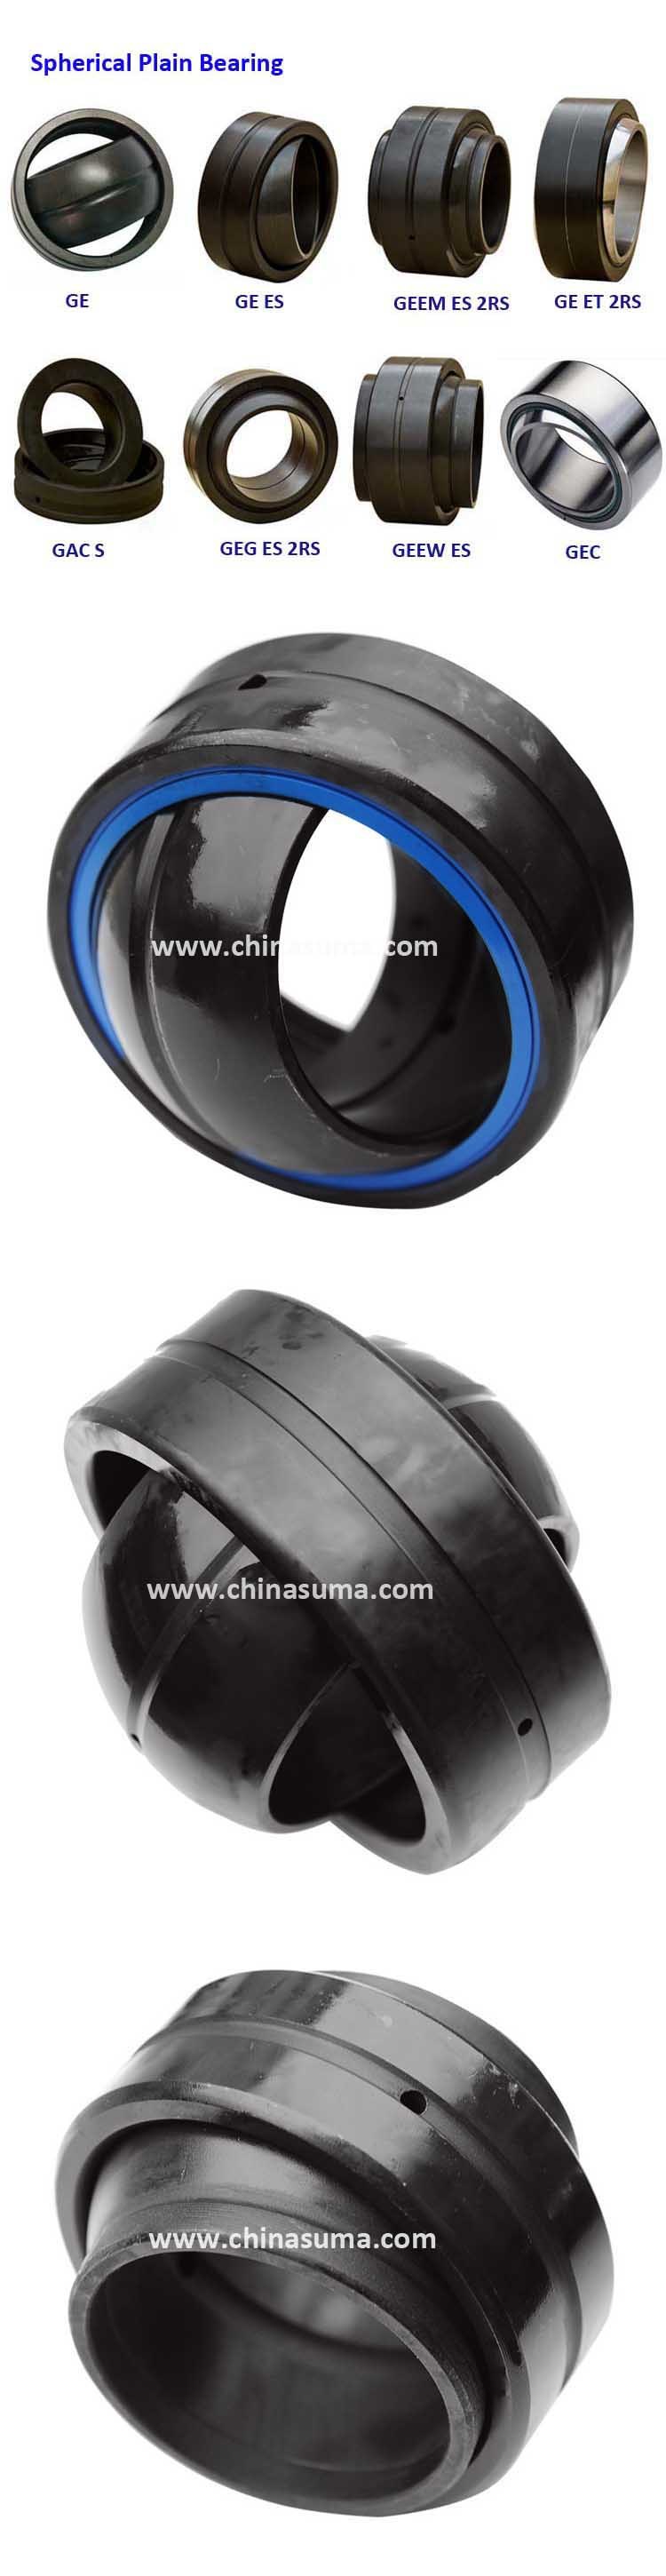 Changzhou Suma Ge Bearing Supplier Spherical Plain Thrust Bearing Ge200es